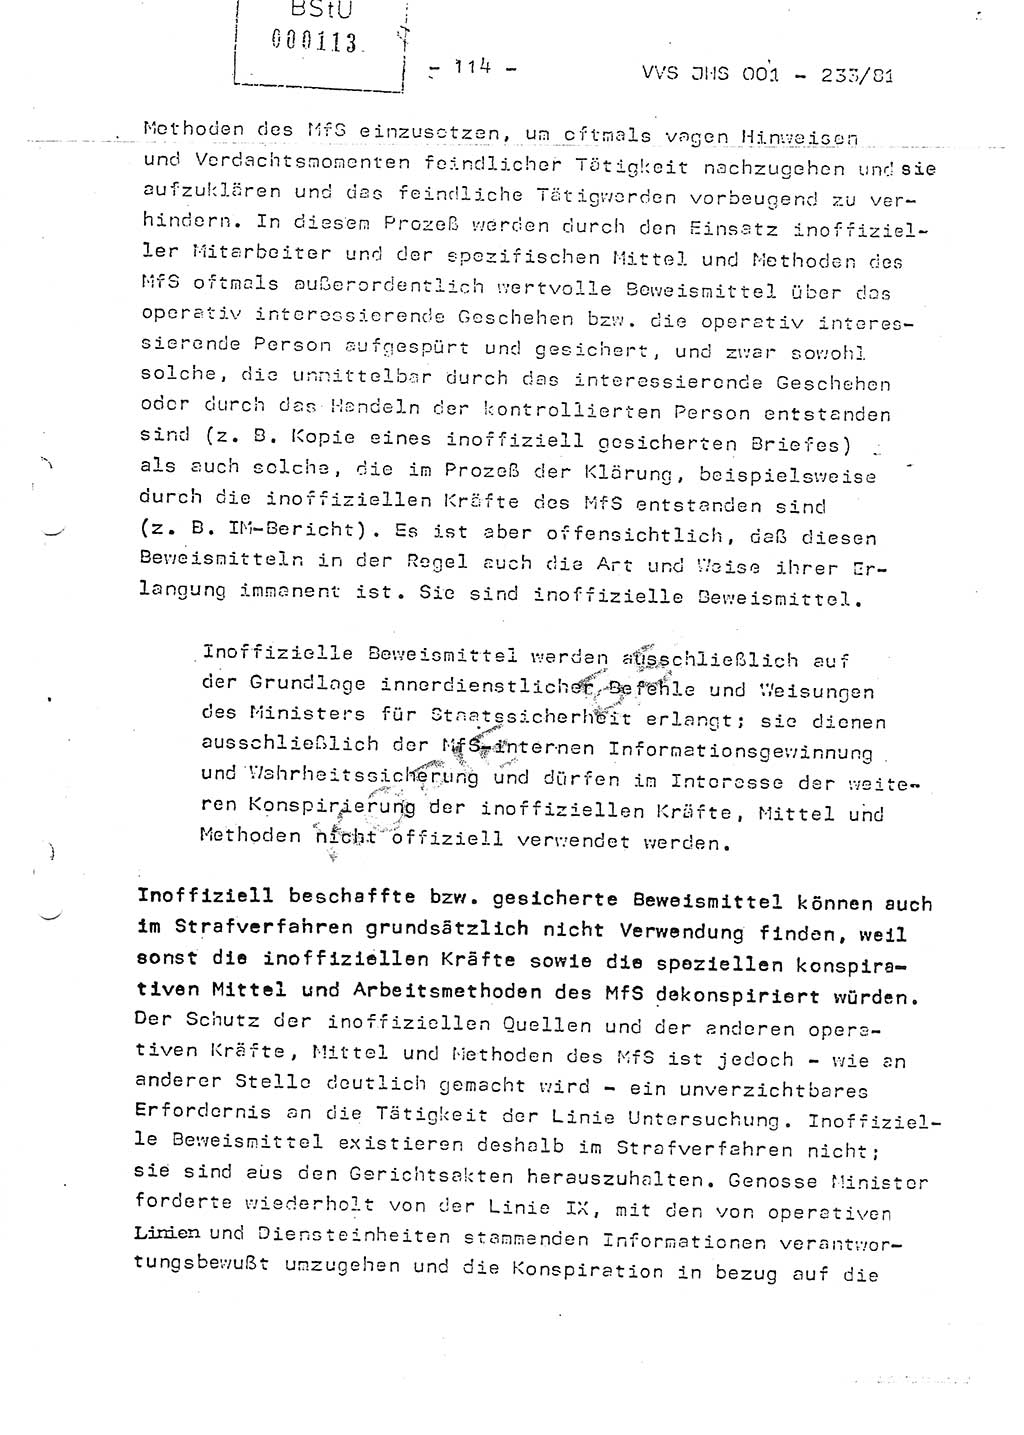 Dissertation Oberstleutnant Horst Zank (JHS), Oberstleutnant Dr. Karl-Heinz Knoblauch (JHS), Oberstleutnant Gustav-Adolf Kowalewski (HA Ⅸ), Oberstleutnant Wolfgang Plötner (HA Ⅸ), Ministerium für Staatssicherheit (MfS) [Deutsche Demokratische Republik (DDR)], Juristische Hochschule (JHS), Vertrauliche Verschlußsache (VVS) o001-233/81, Potsdam 1981, Blatt 114 (Diss. MfS DDR JHS VVS o001-233/81 1981, Bl. 114)